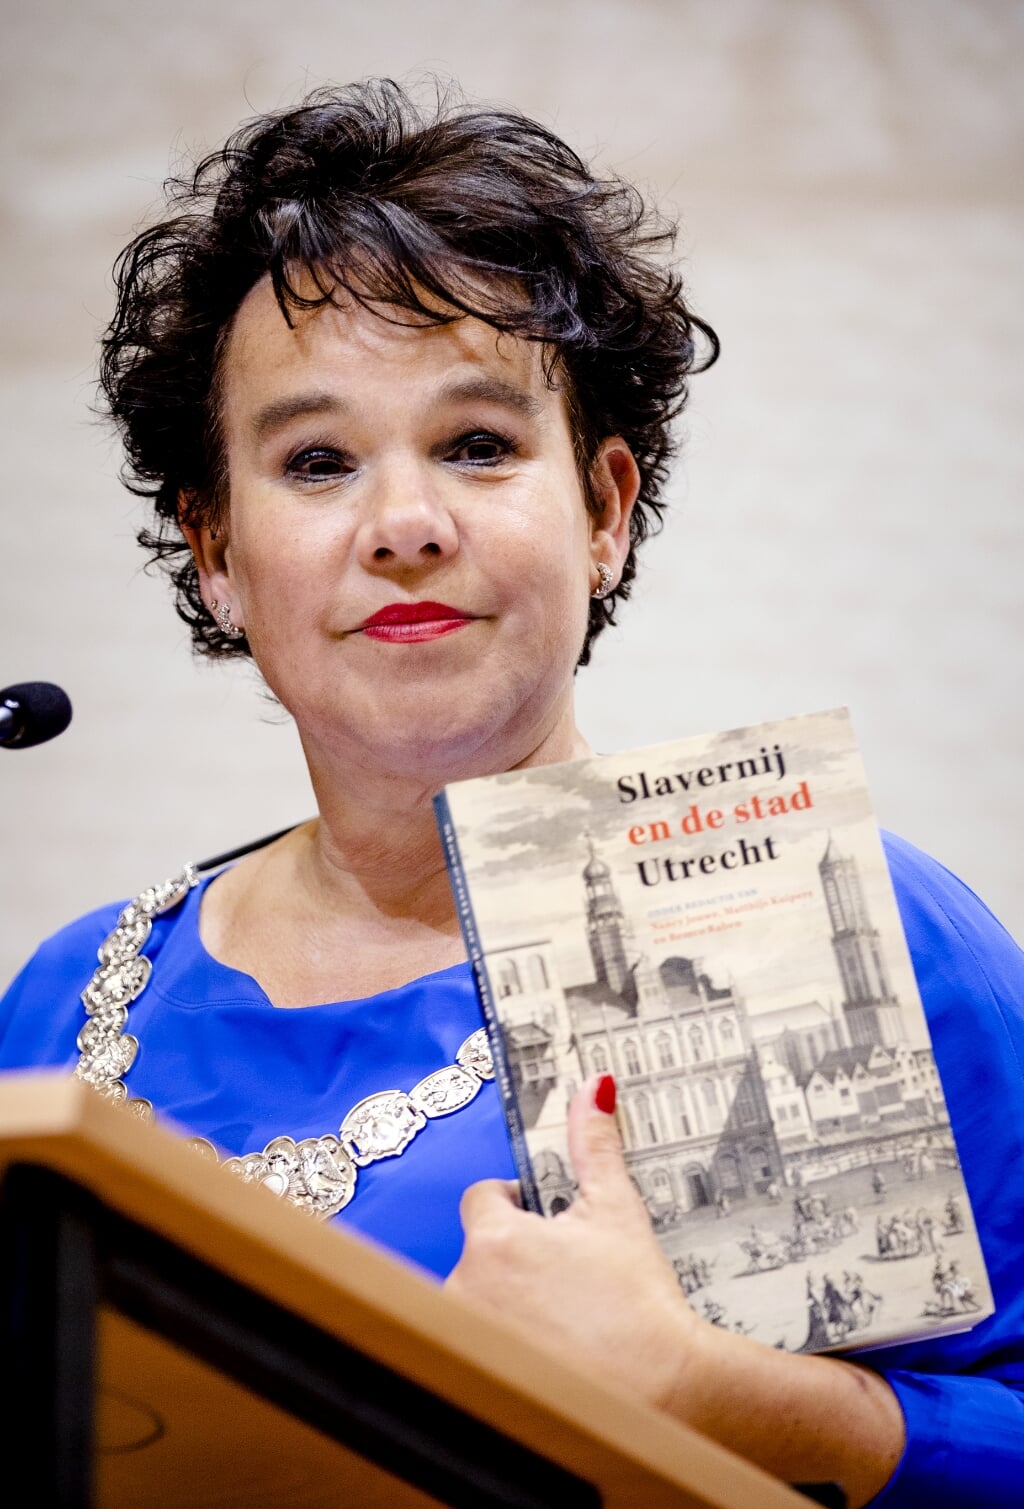 Burgemeester Dijksma nam het boek 'Slavernij en de stad Utrecht' in ontvangst.